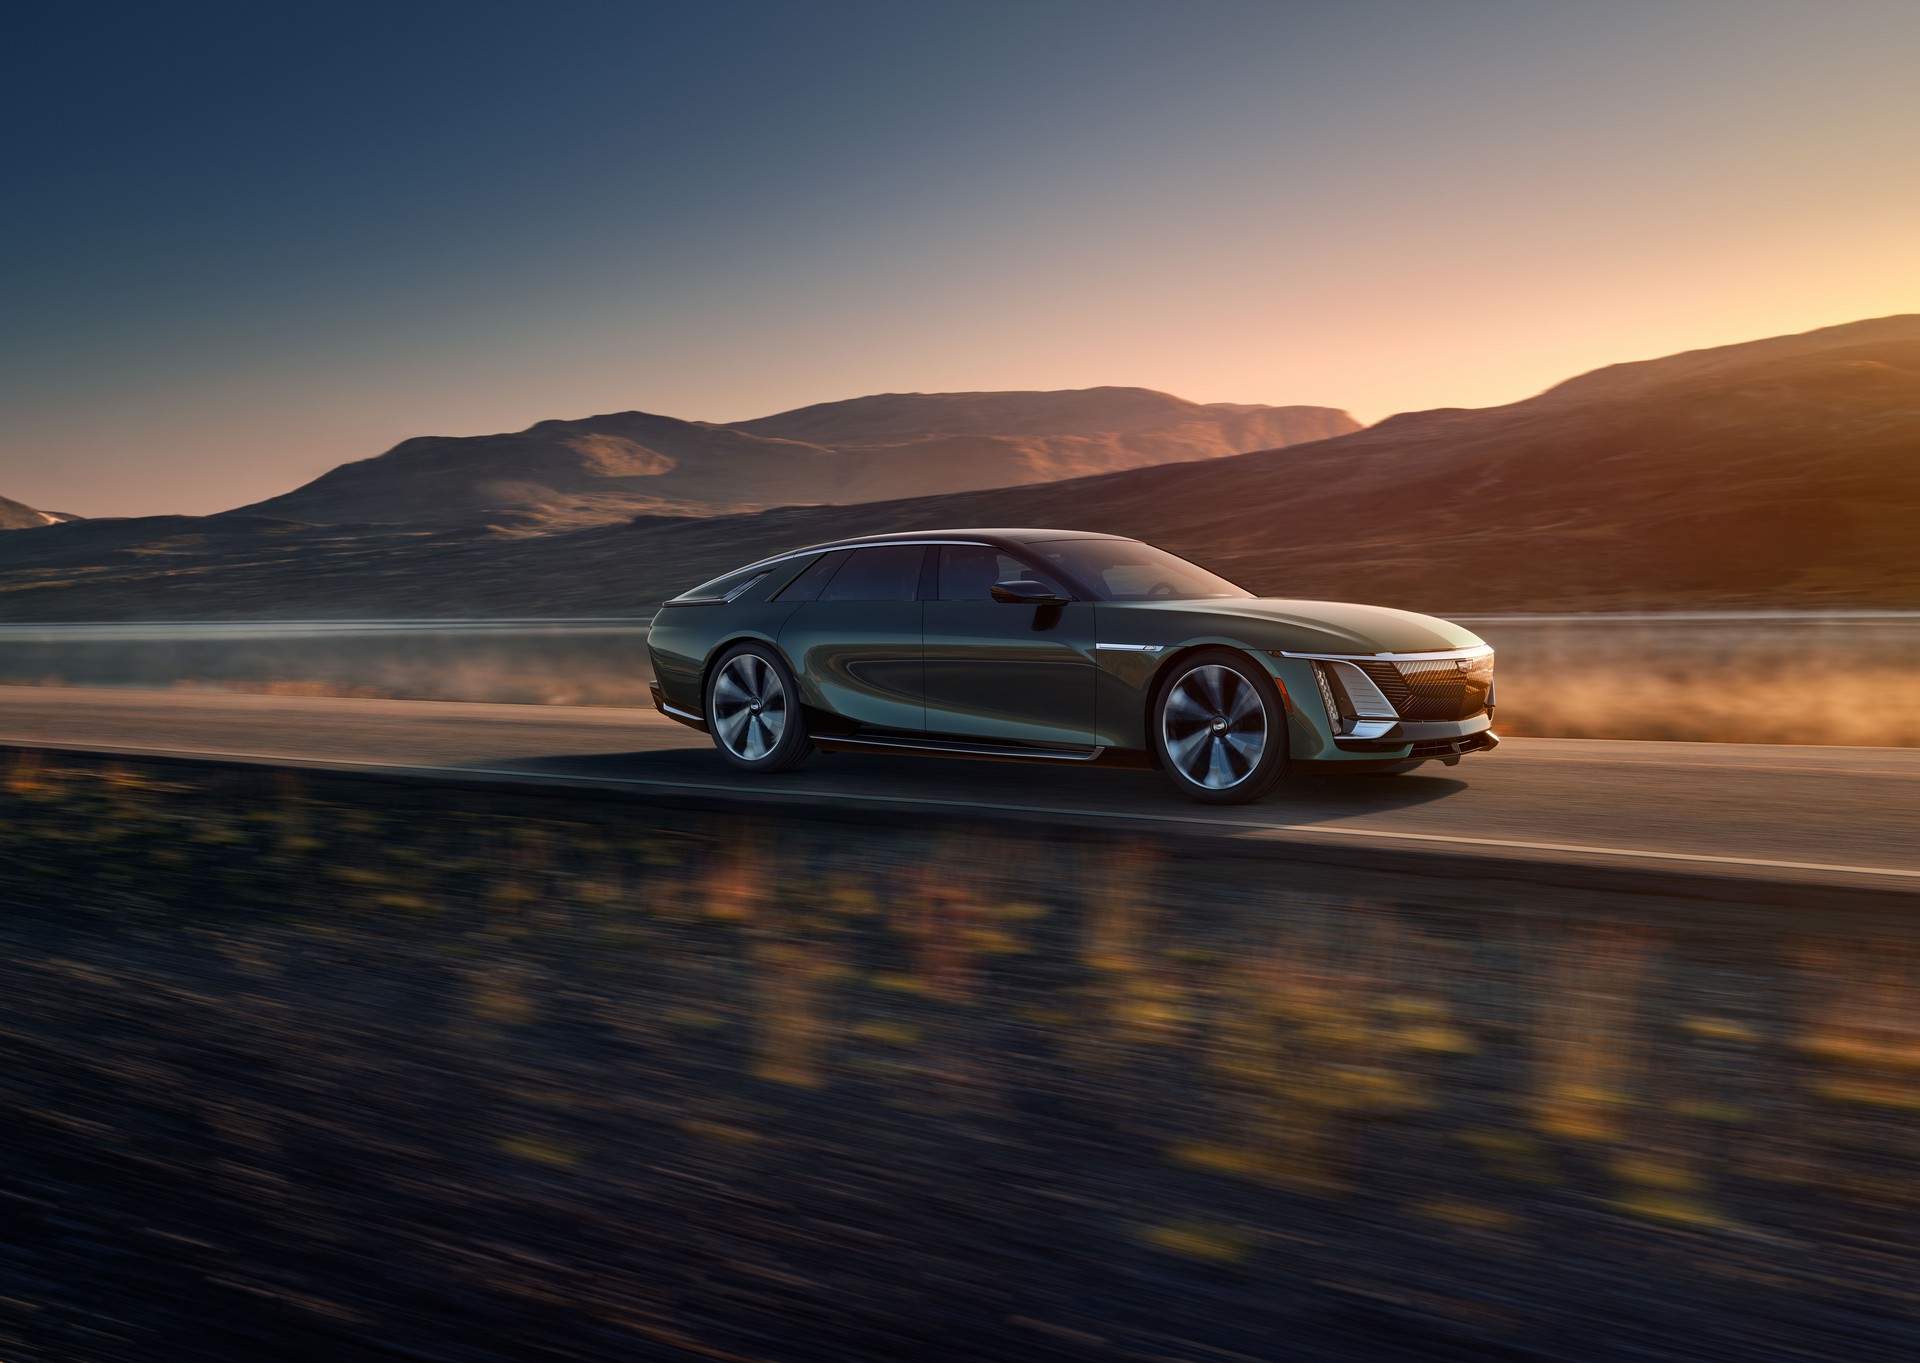 2024 Cadillac Celestiq воспоставува нови стандарди во луксузниот сегмент / ФОТО+ВИДЕО